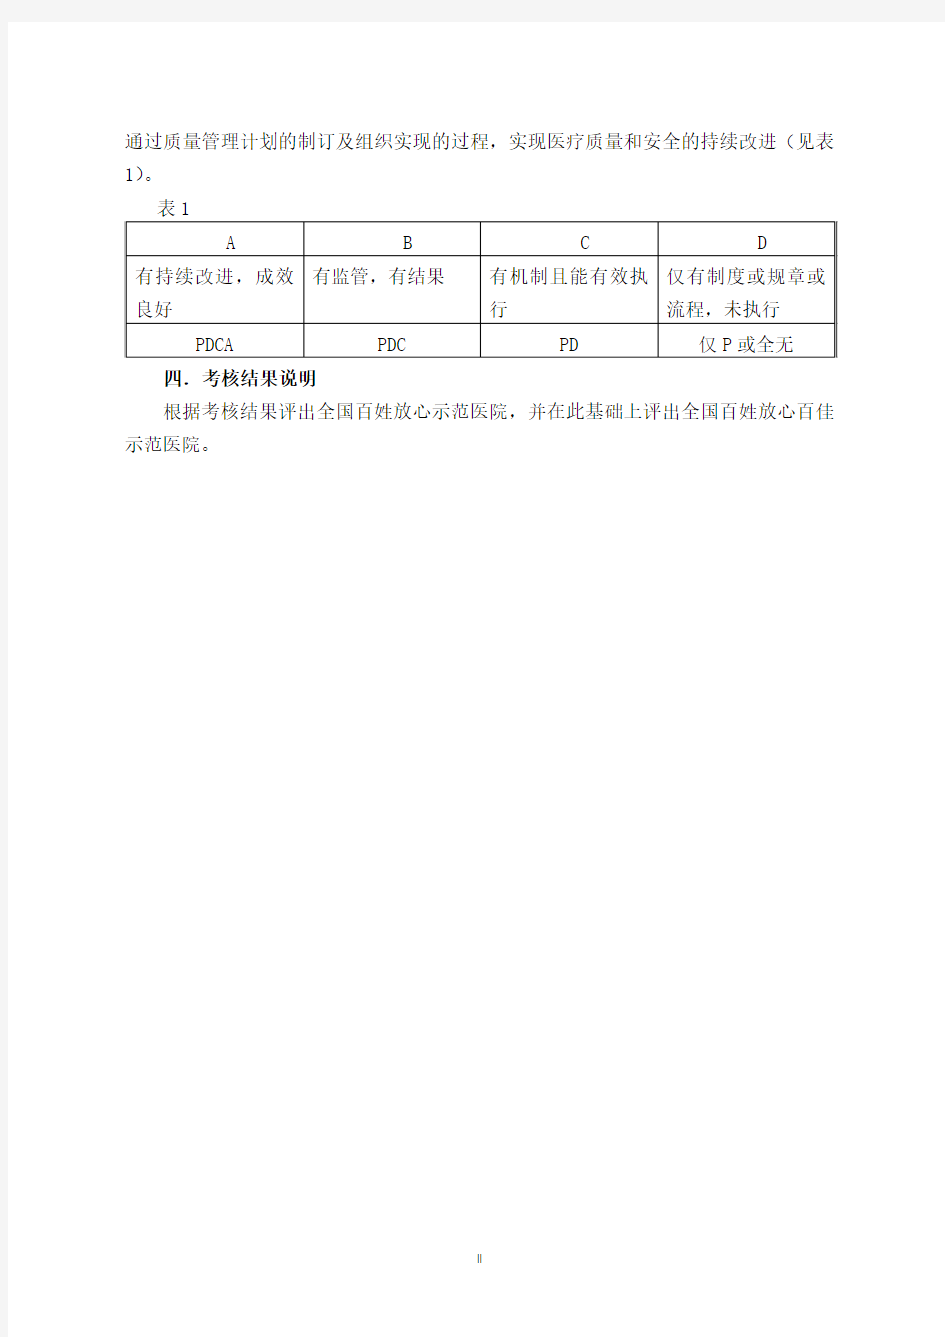 全姓放心医院大讲堂动态管理第四周期考核标准(2014年分部门)doc